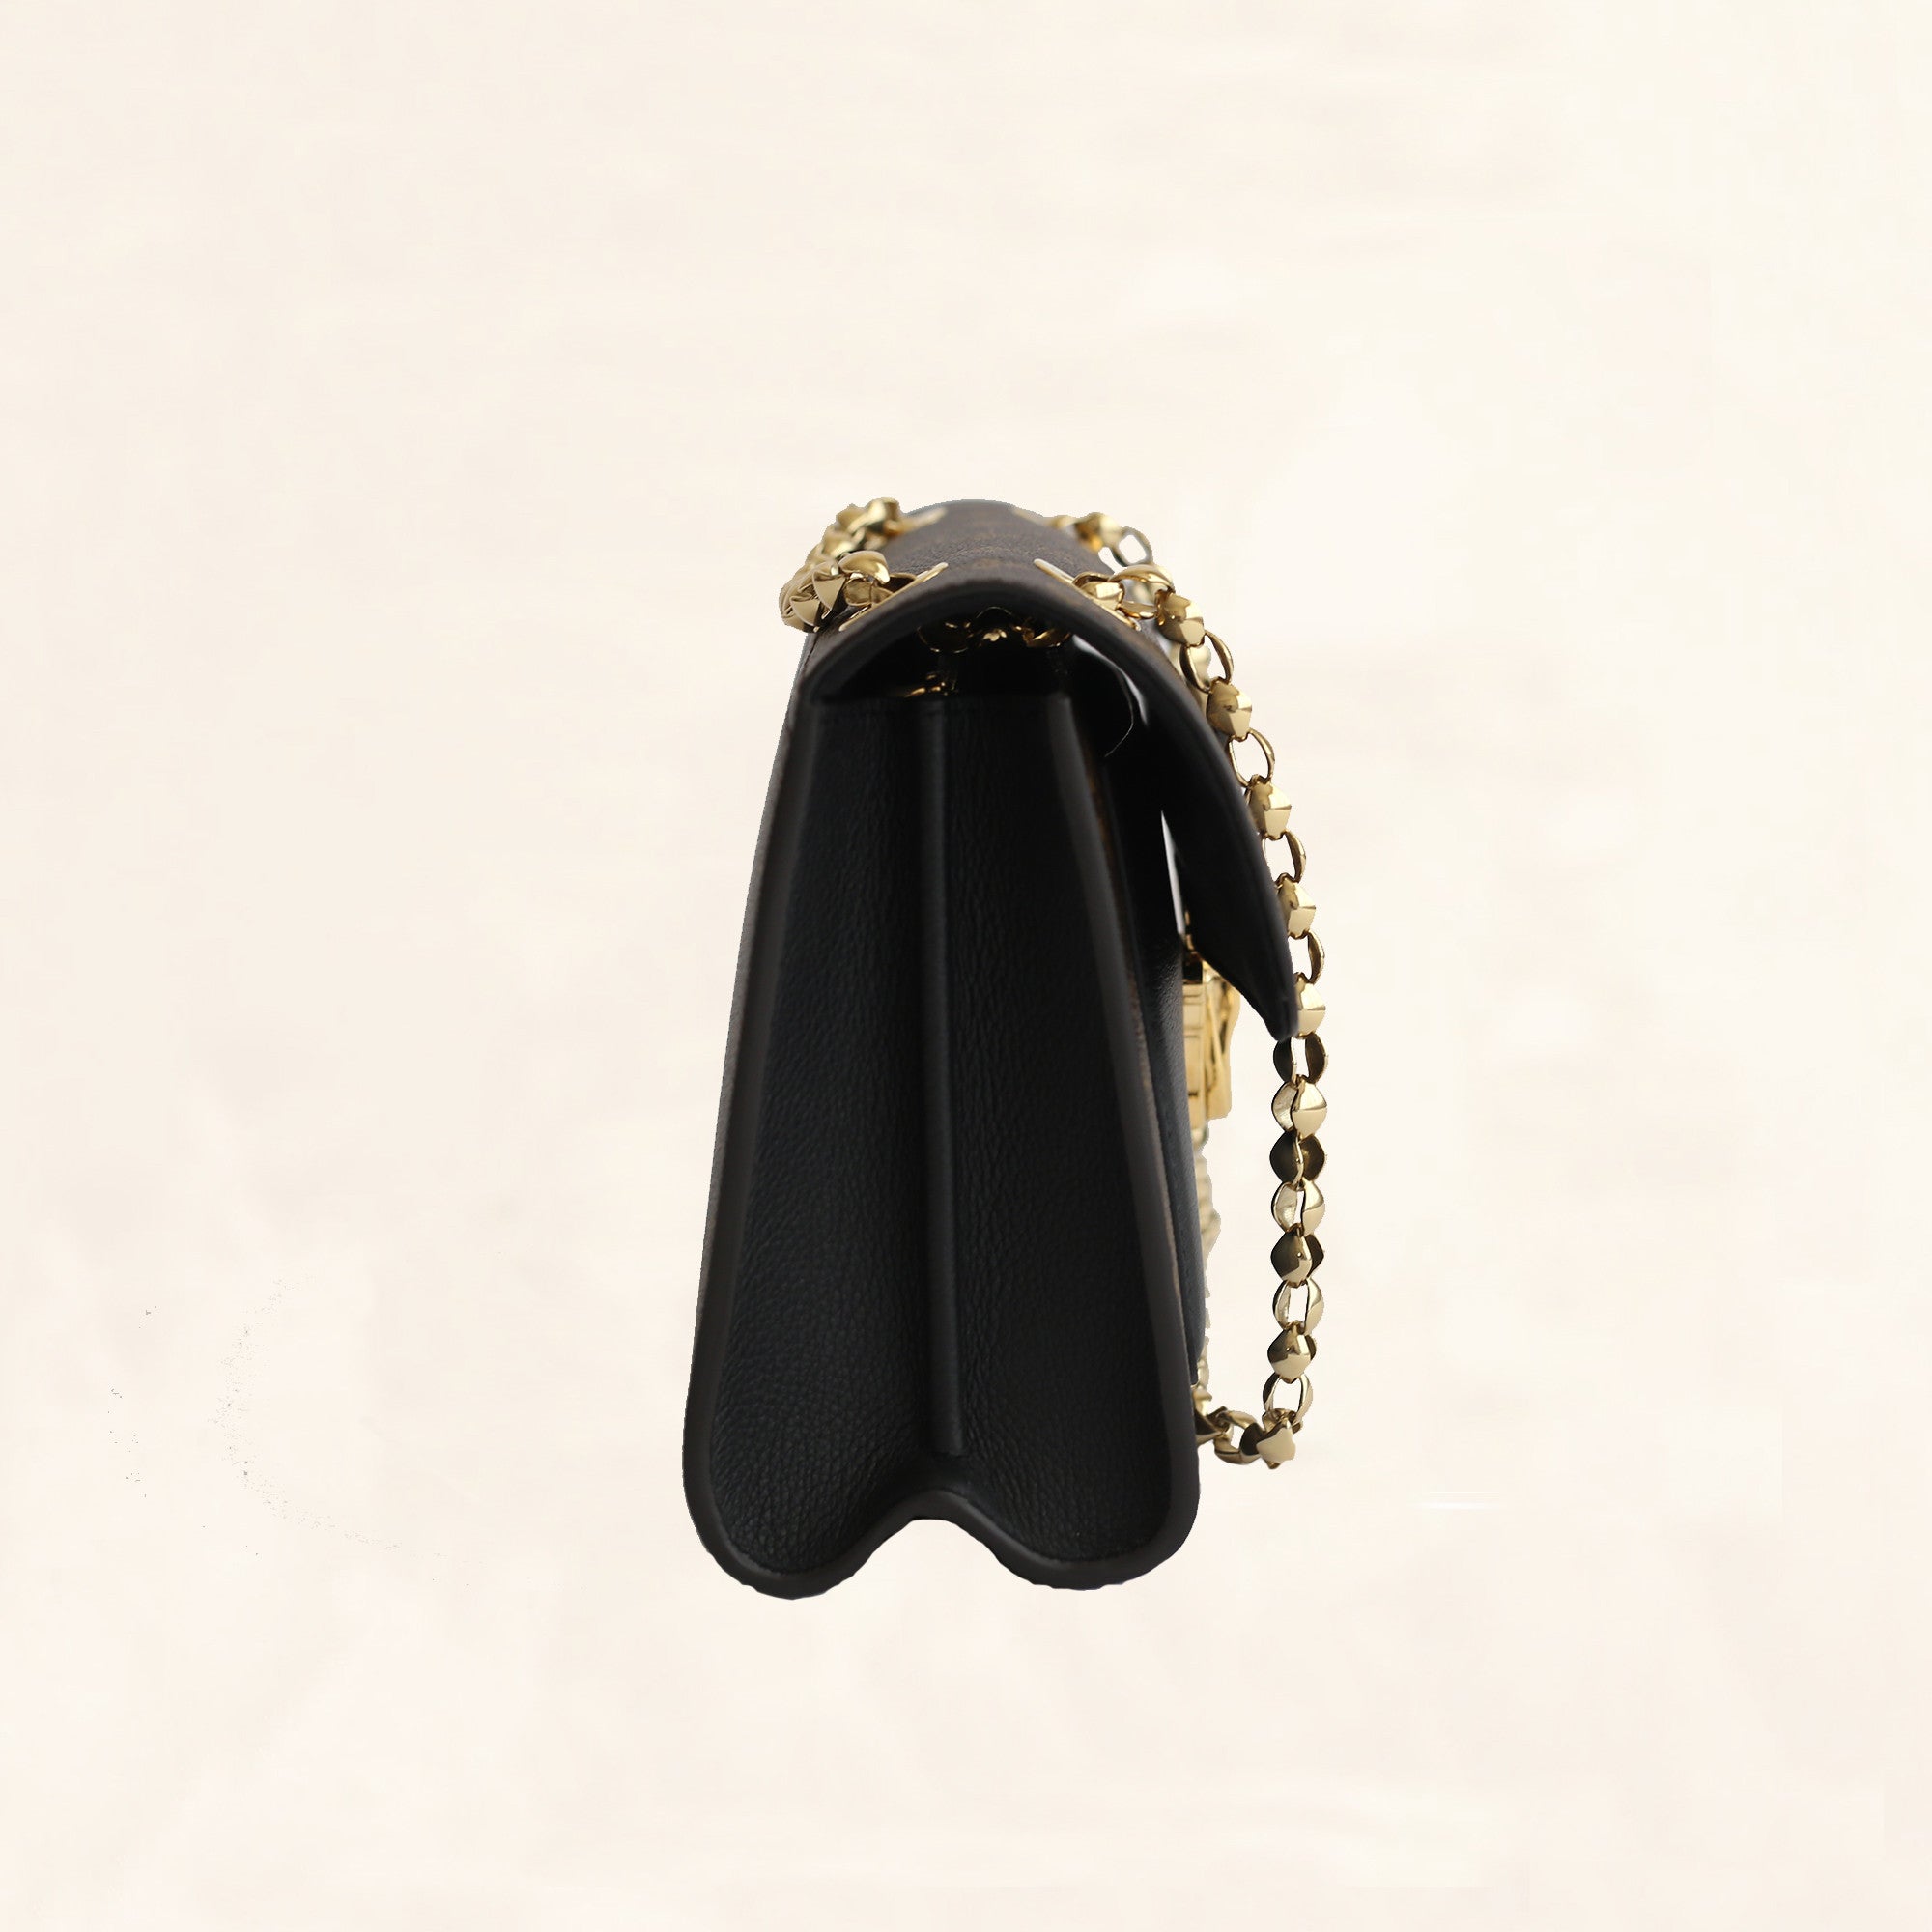 LOUIS VUITTON Victoire Monogram Black Leather Hand Bag M41730